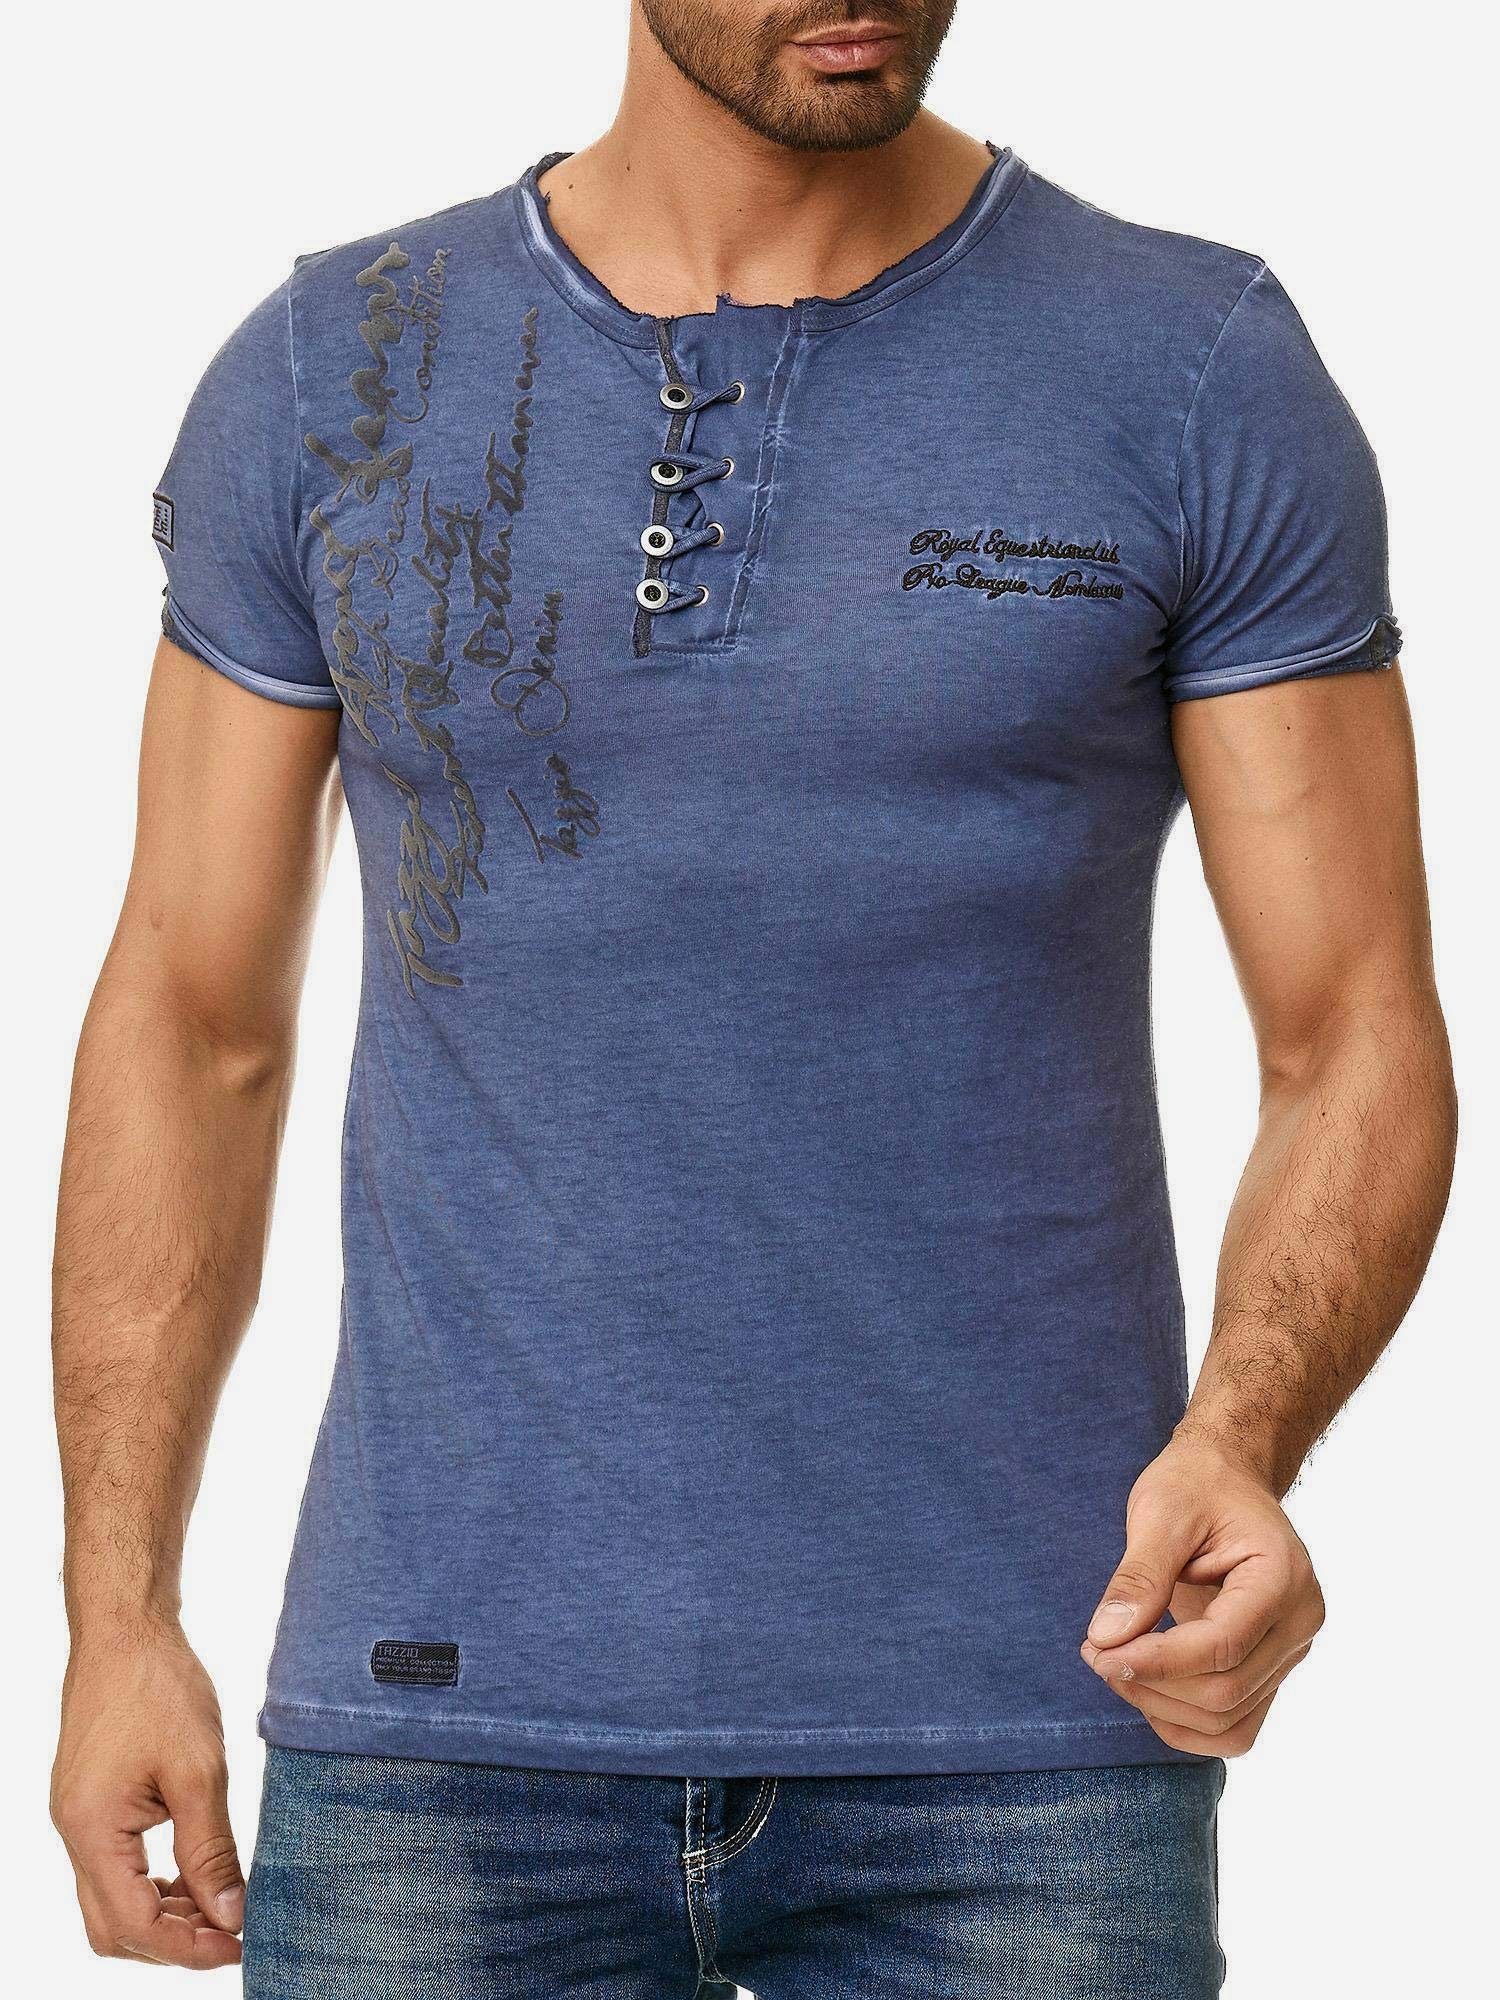 Tazzio T-Shirt 4050-1 Rundhalsshirt in Used offenem Look Kragen Ölwaschung dezentem mit navy und